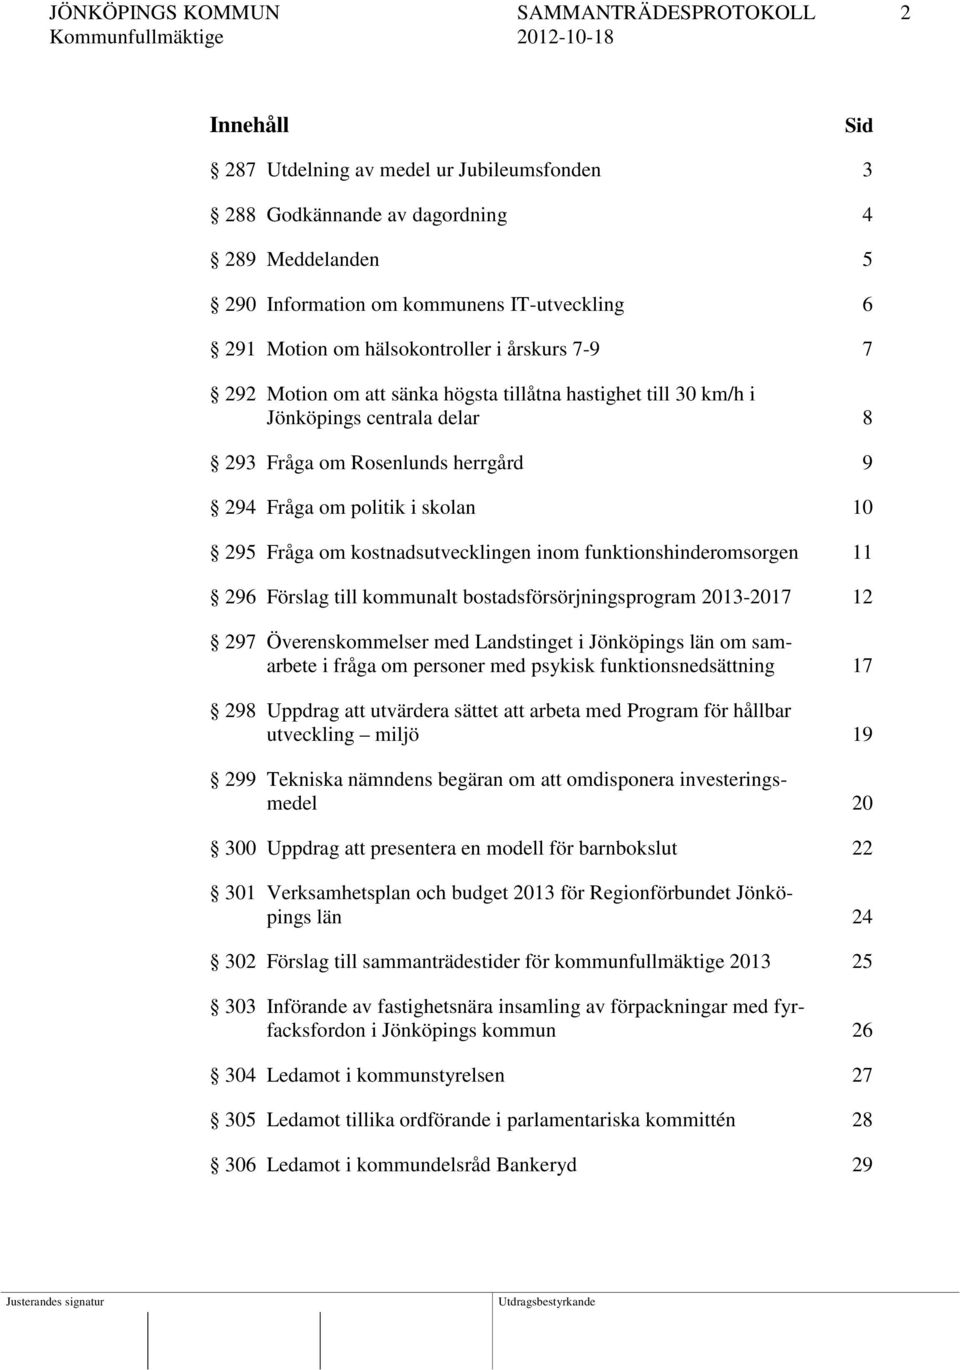 10 295 Fråga om kostnadsutvecklingen inom funktionshinderomsorgen 11 296 Förslag till kommunalt bostadsförsörjningsprogram 2013-2017 12 297 Överenskommelser med Landstinget i Jönköpings län om